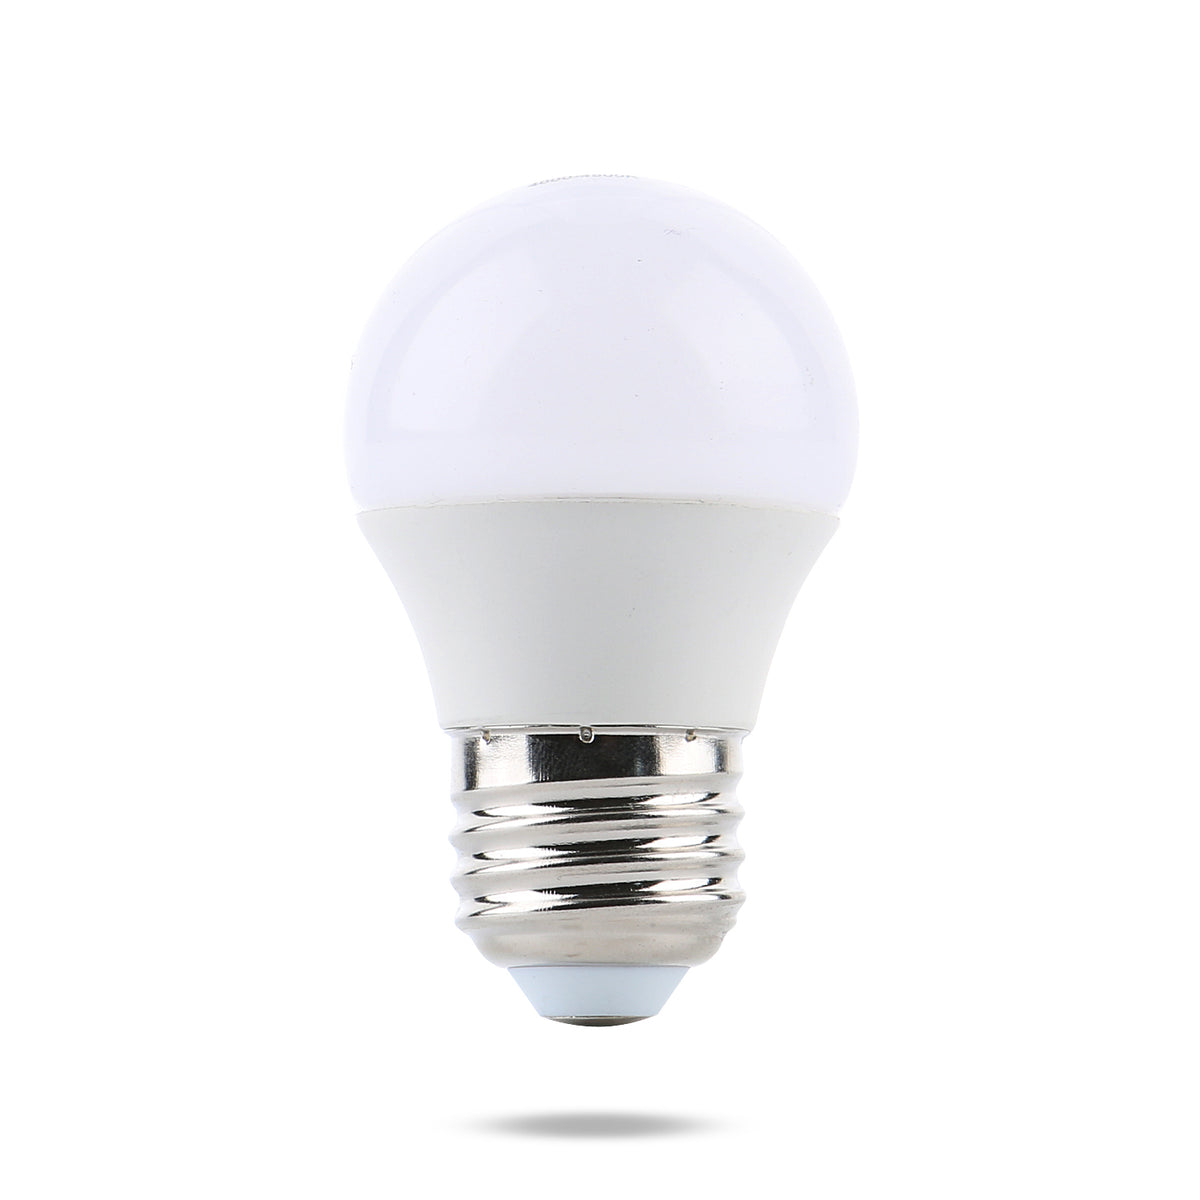 Watt LED Bulb | 12V DC LED Light Bulb | Substantial Energy Savings! – Watt -a-Light